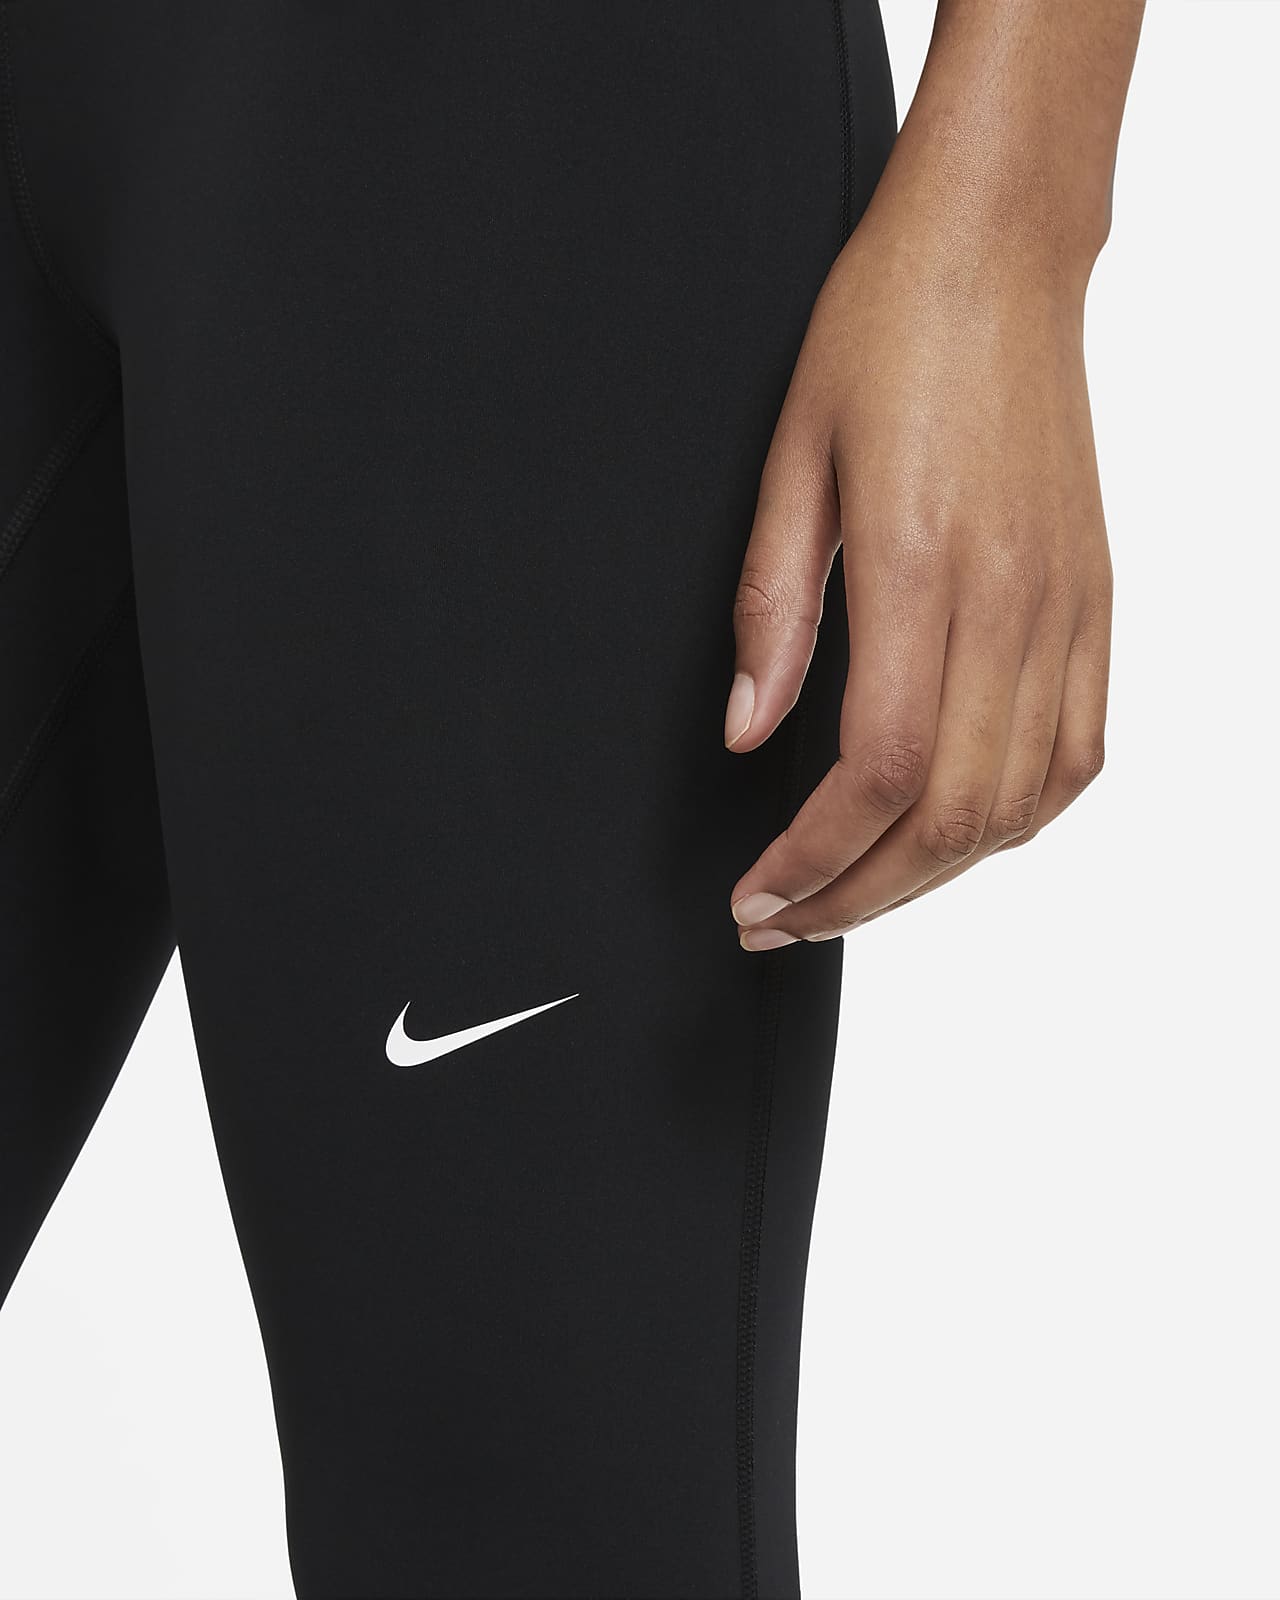 Nike: Women's Pro 365 Crop Tights, Women's